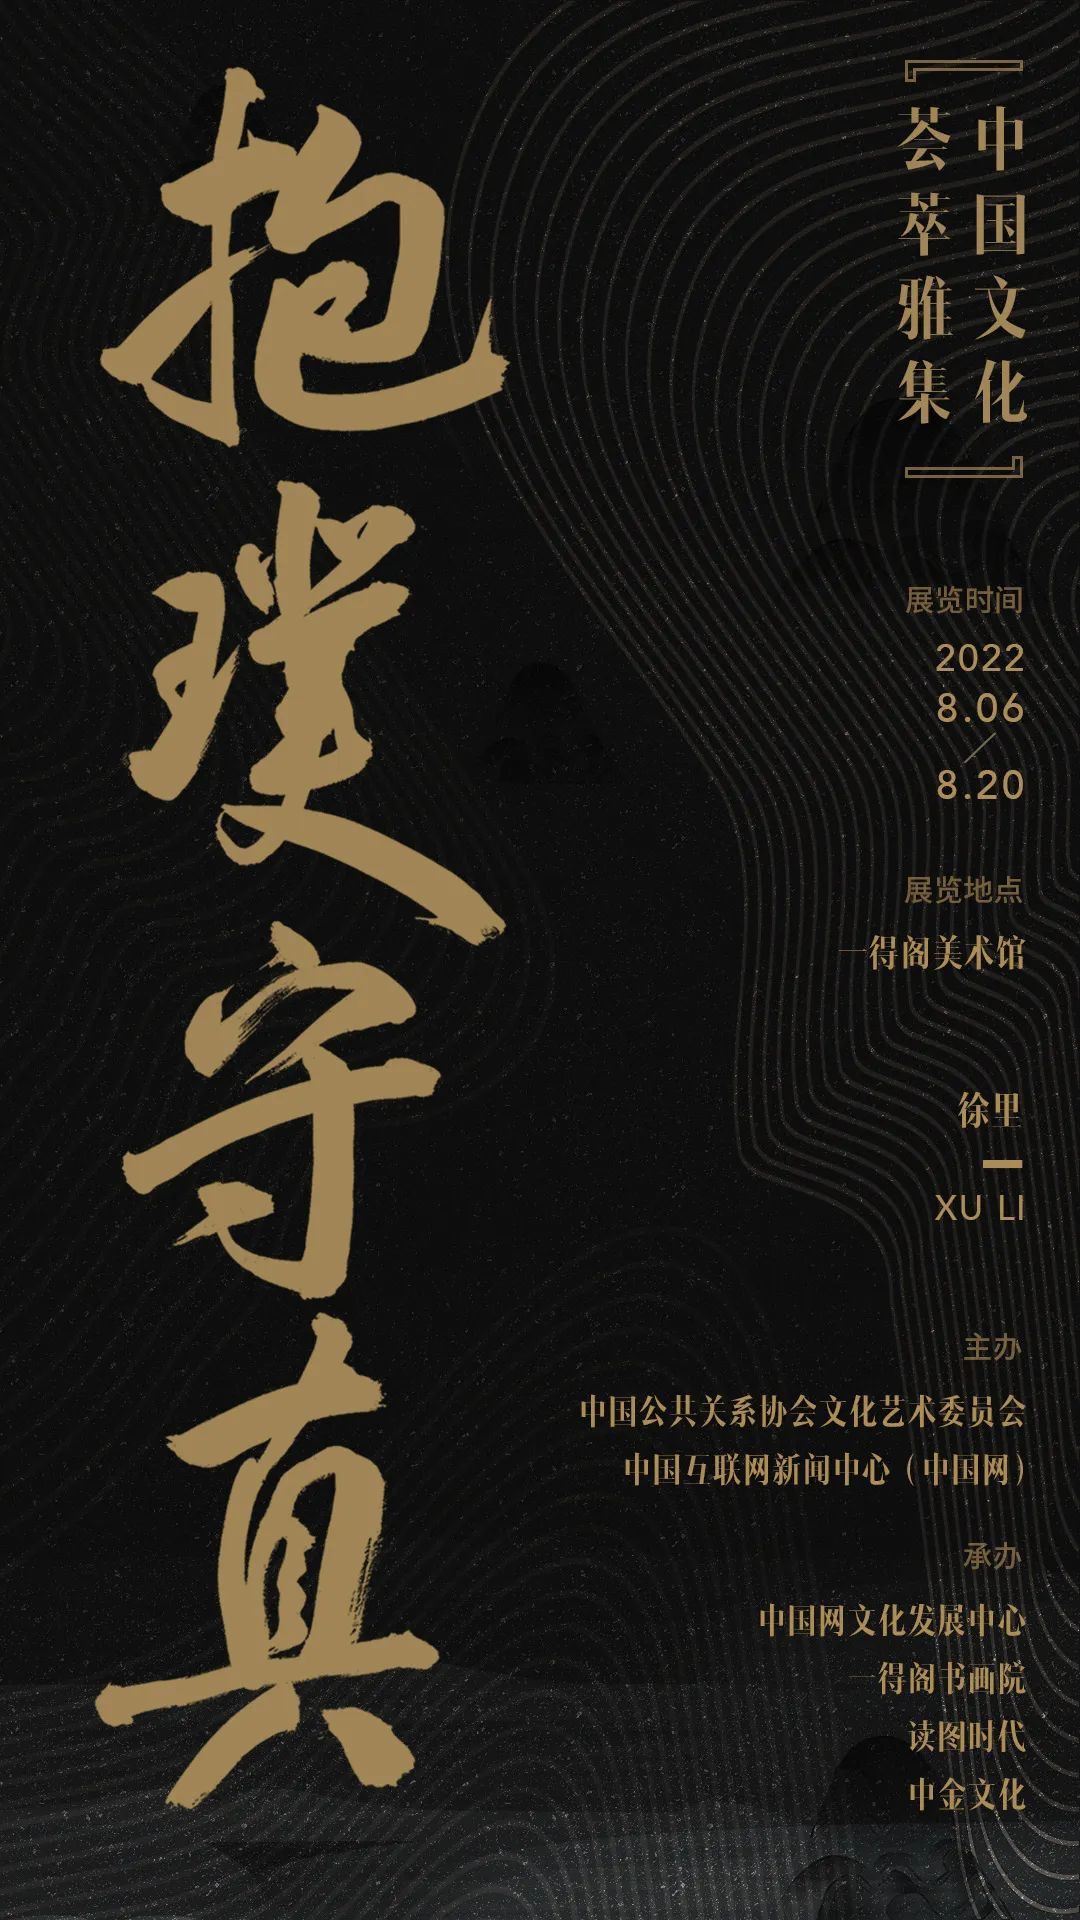  “抱璞守真——中国文化荟萃雅集”将于明日开展，共展出徐里50幅书法作品